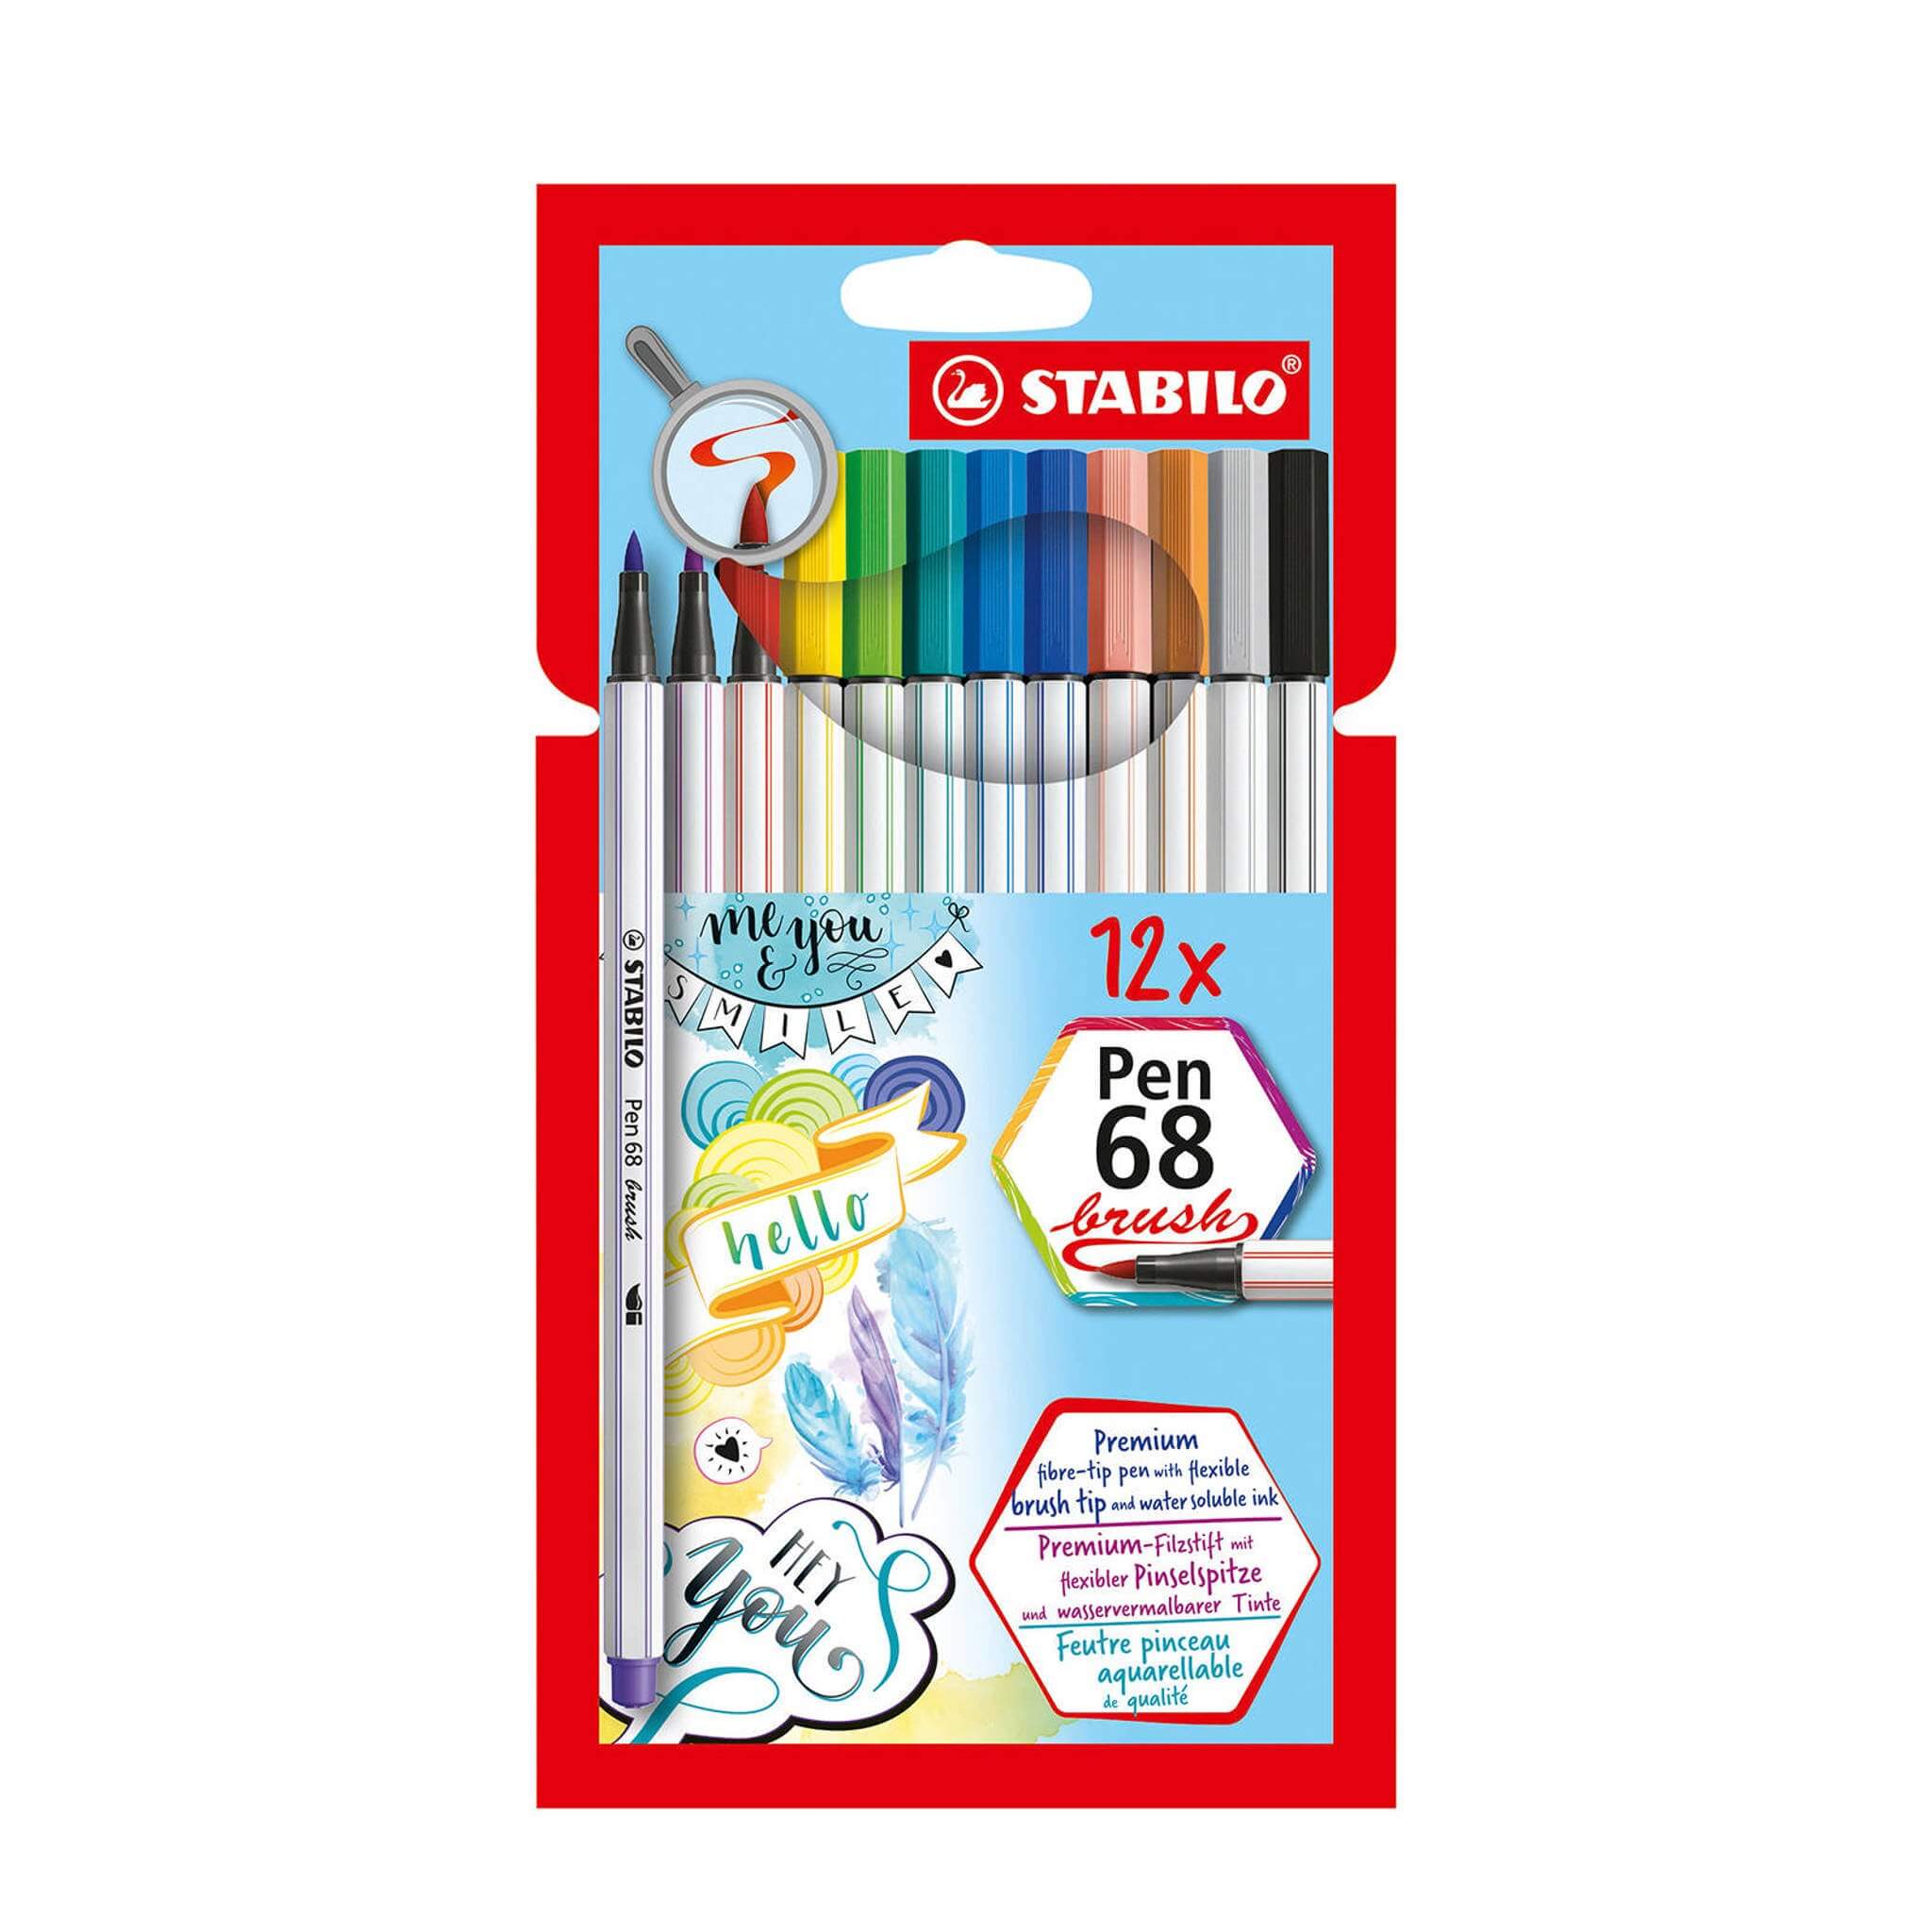 STABILO Pen 68 Brush Tip Set of 20